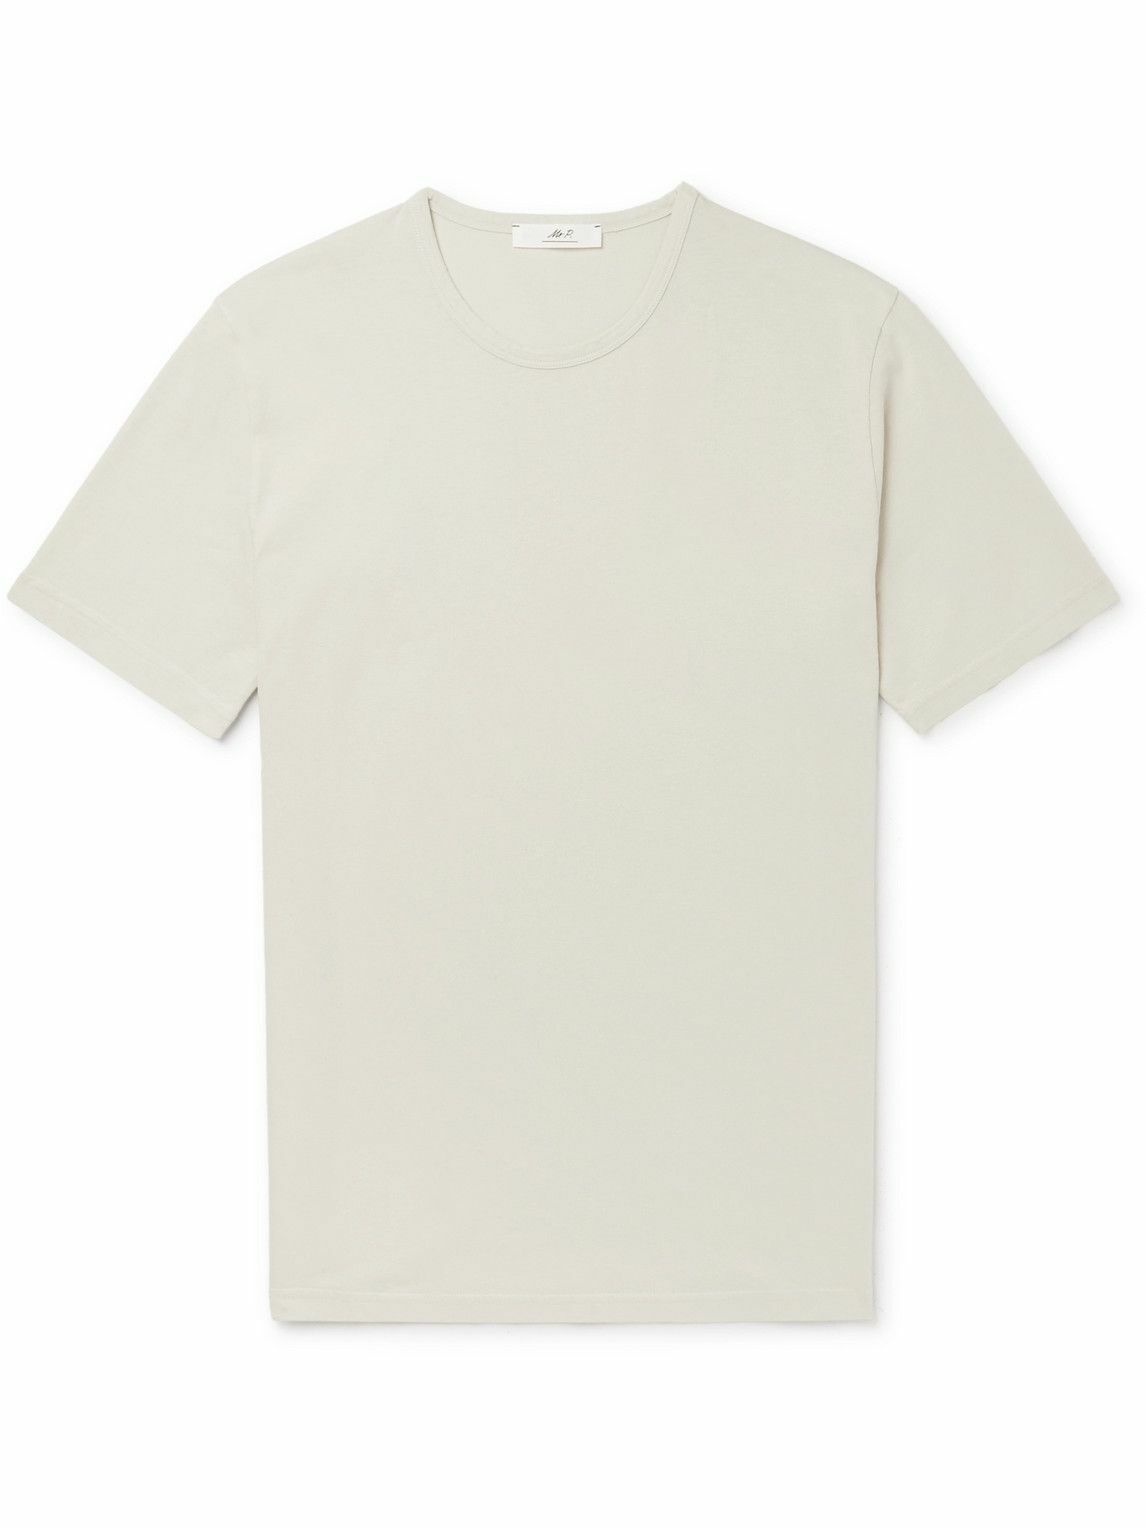 Mr P. - Garment-Dyed Organic Cotton-Jersey T-Shirt - Neutrals Mr P.